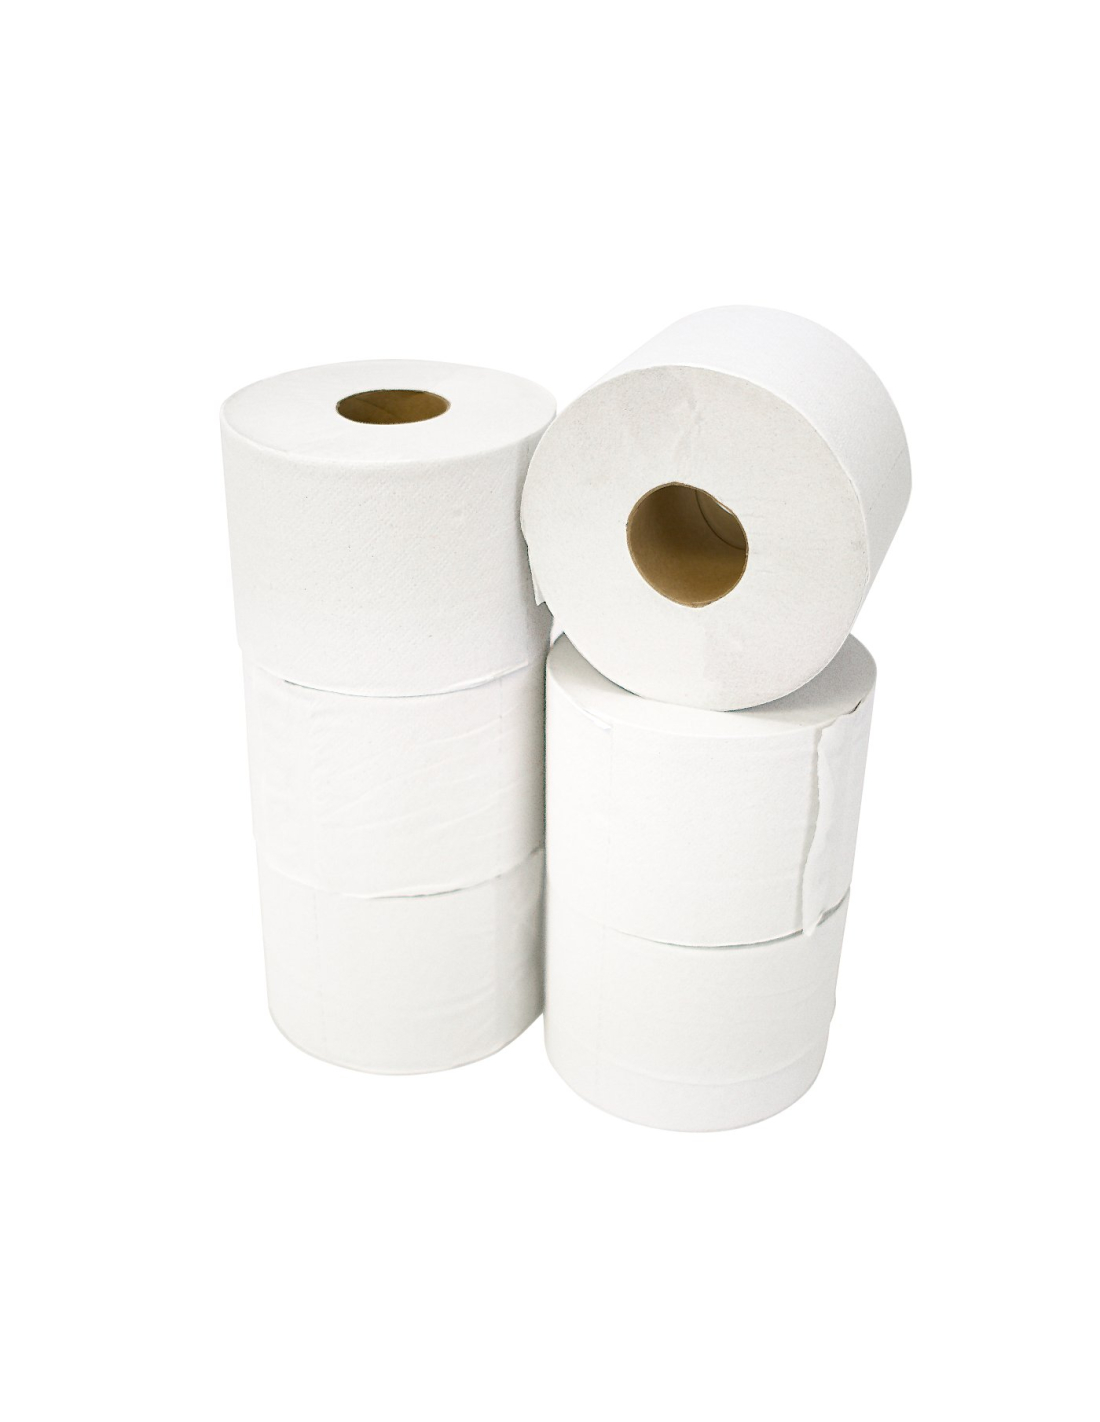 Histoire de l'hygiène (6/7): Présentez vos papiers toilette